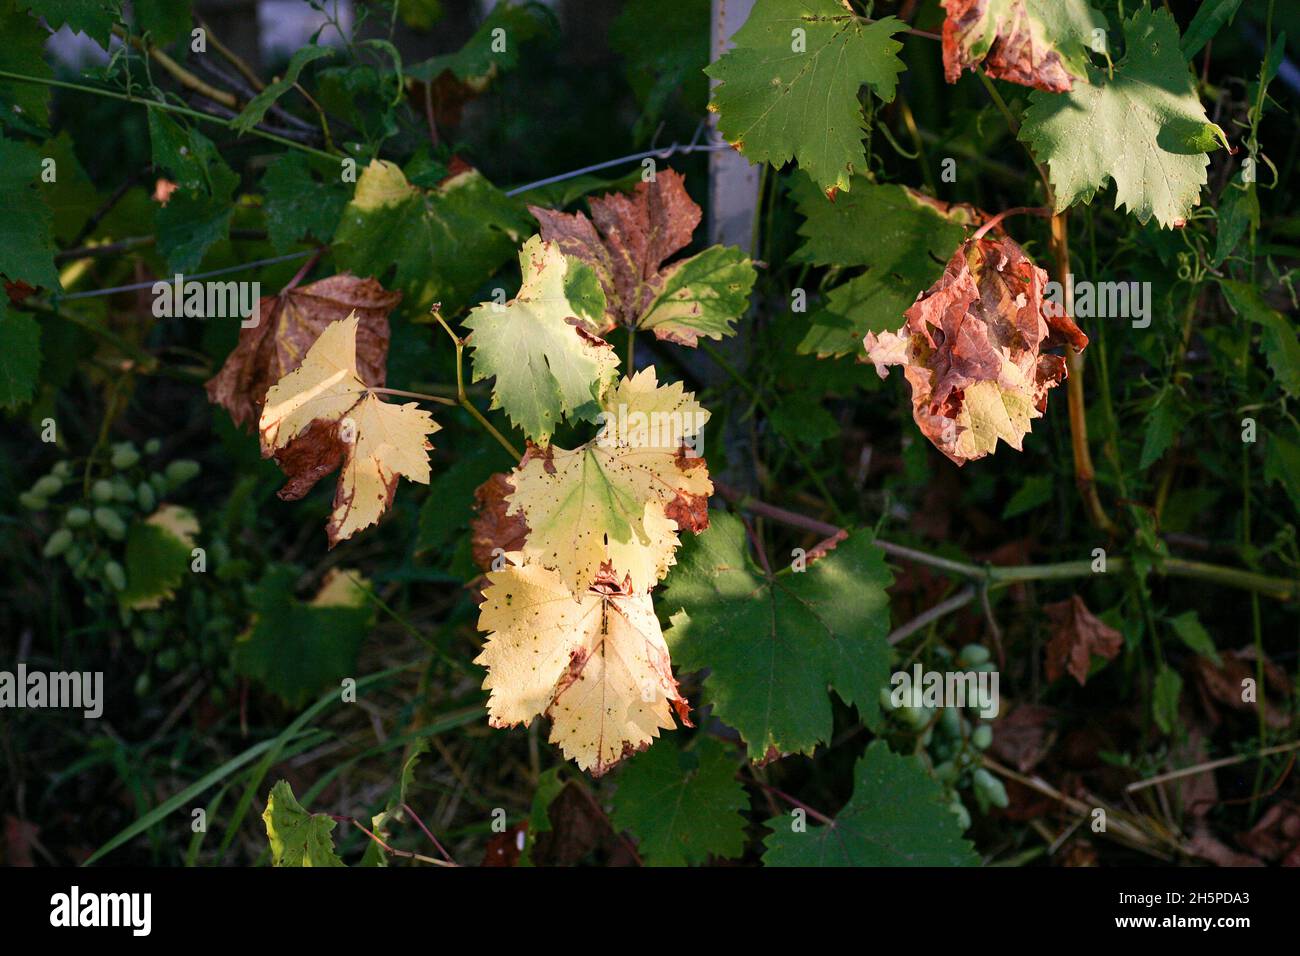 Una malattia dell'uva molto pericolosa che colpisce le parti aeree della pianta, coprendo la parte superiore delle foglie con un rivestimento bianco. Macchie scure appaiono su foglie malate. Le macchie sembrano diventare marroni Foto Stock